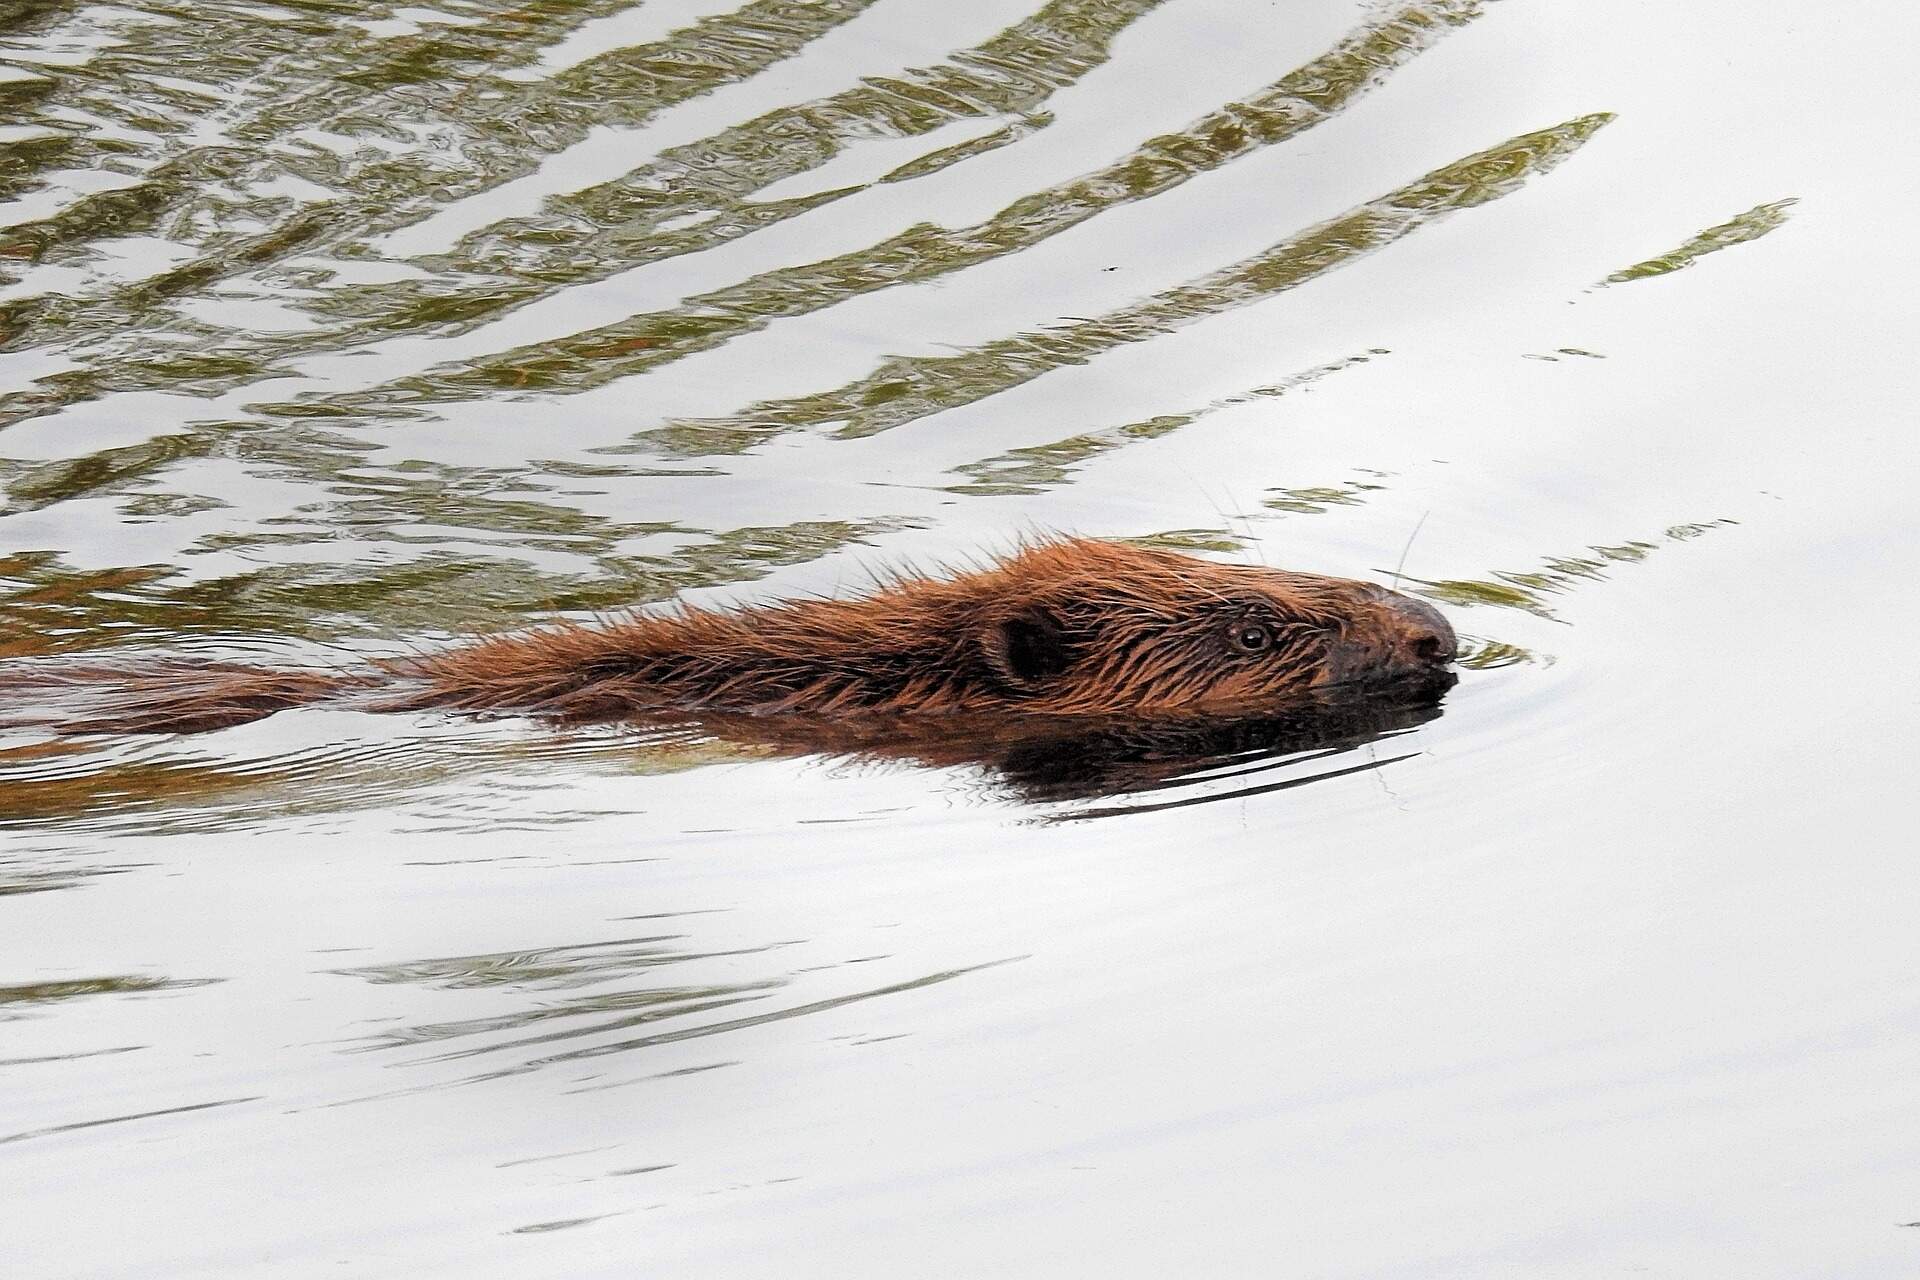 beaver-swimming